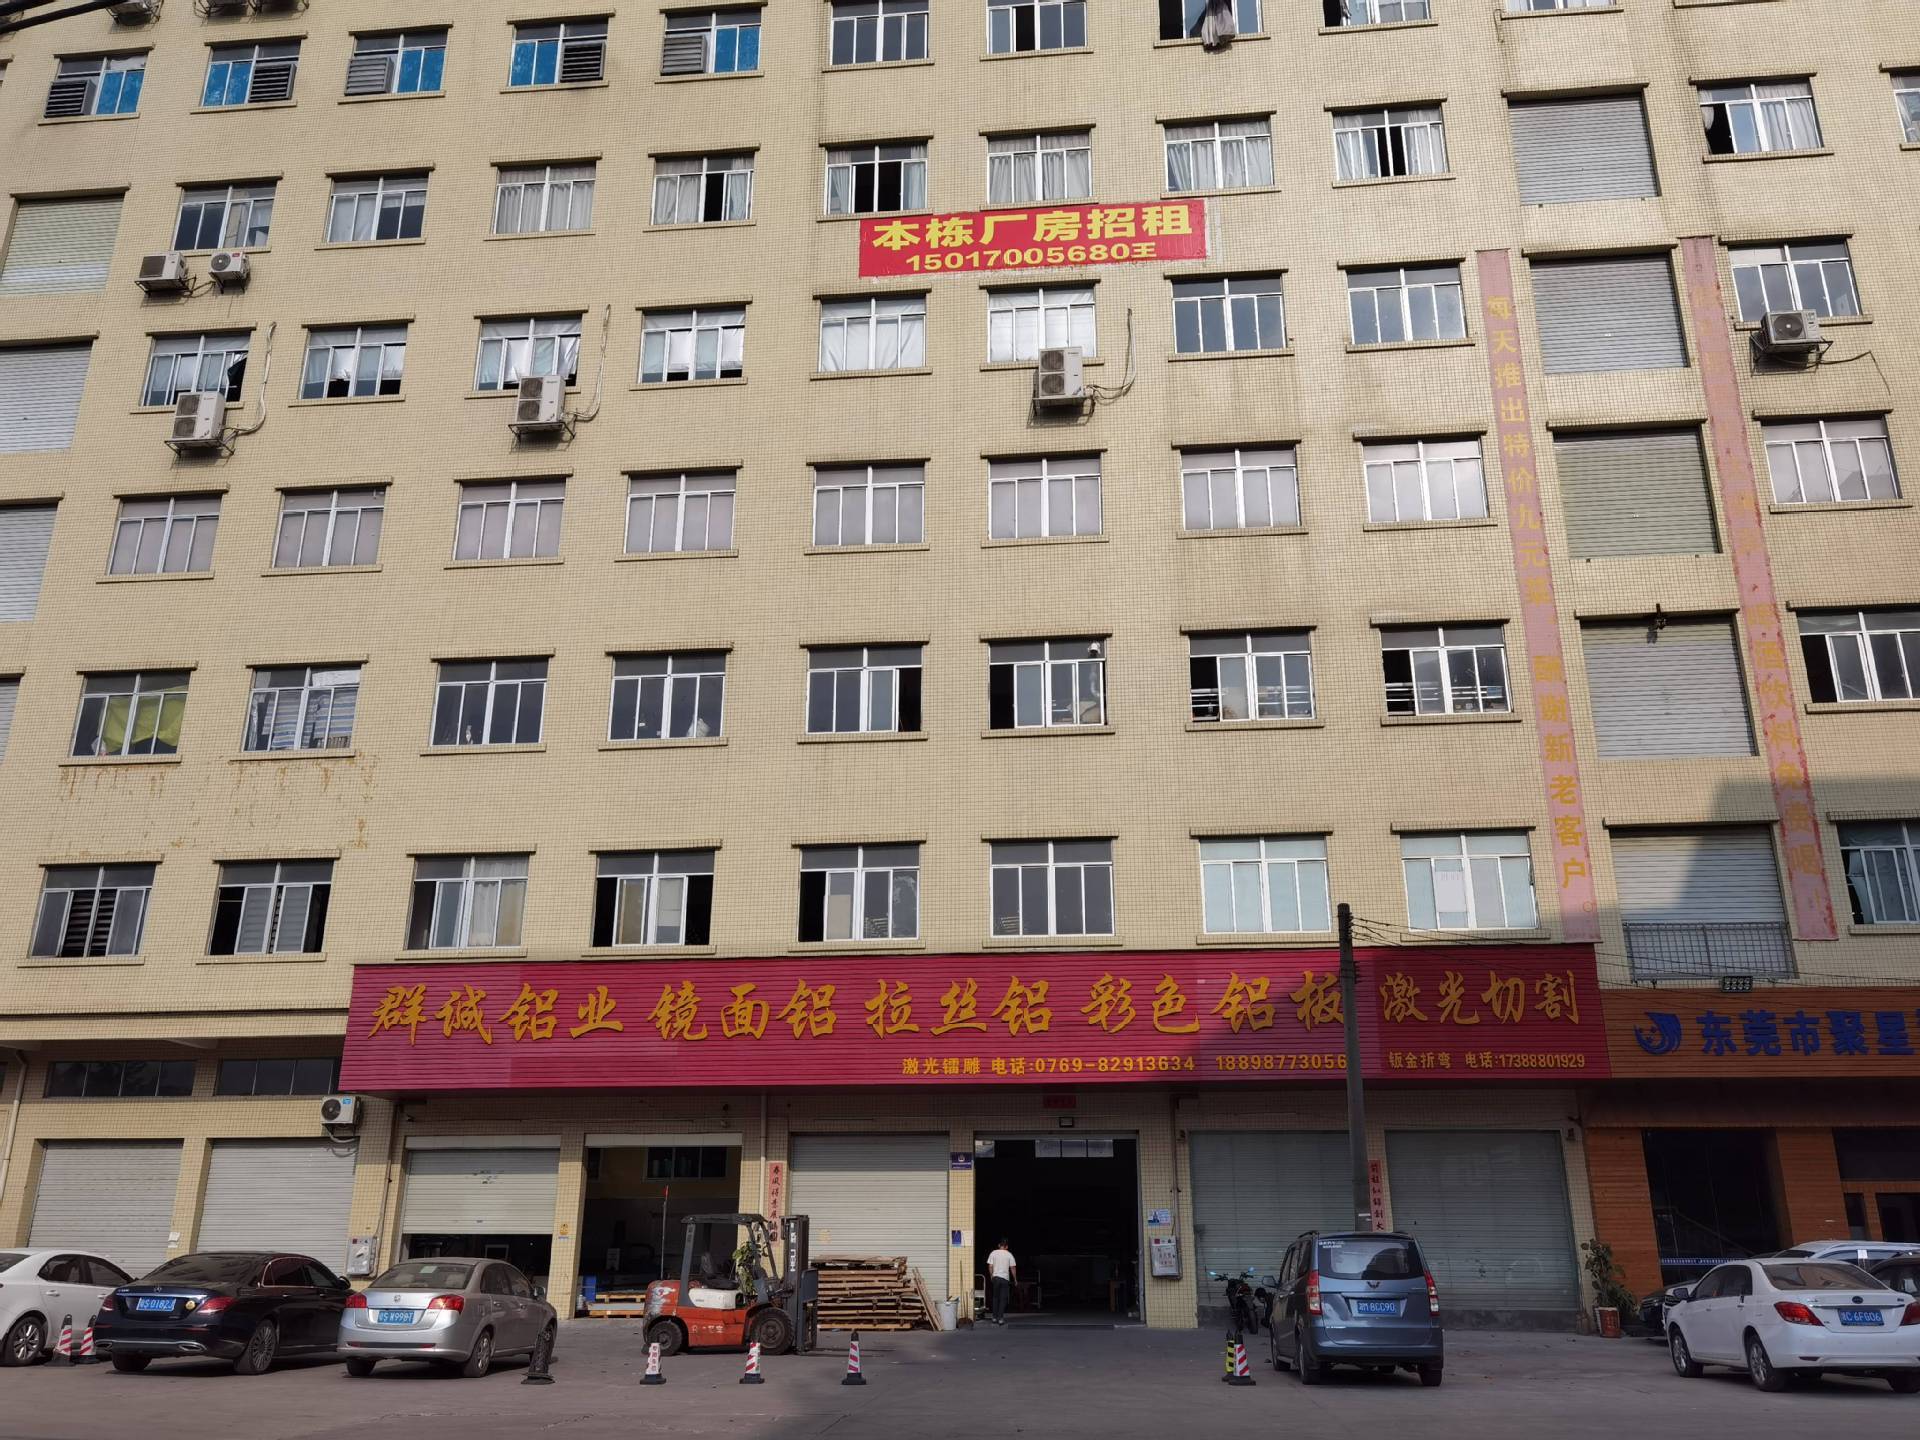   Dongguan Quncheng Metal Co., Ltd